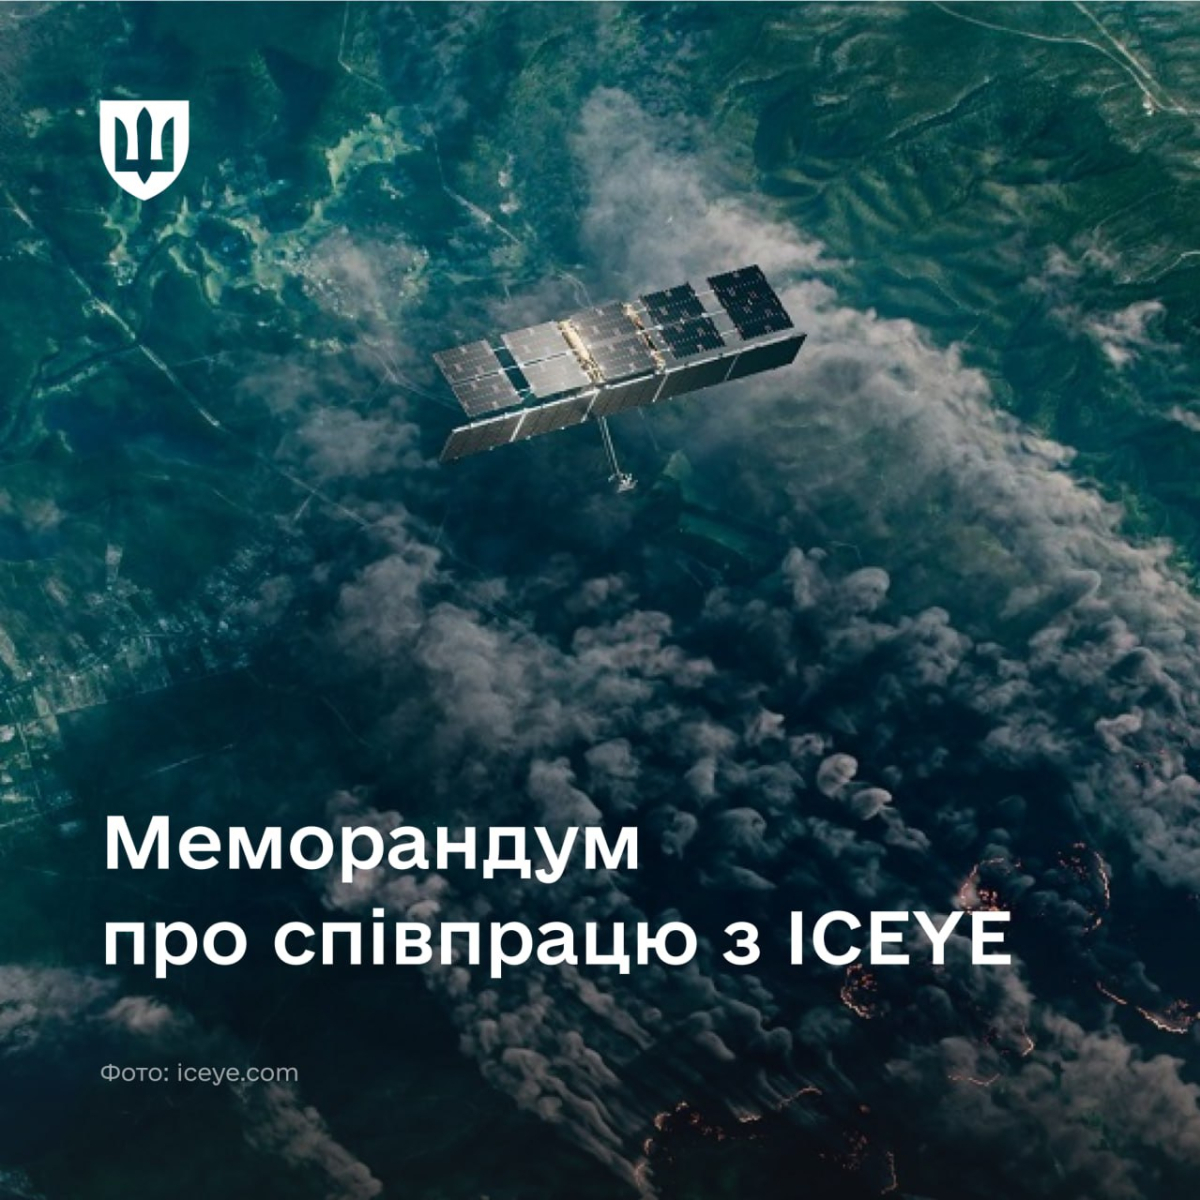 Україна посилить співпрацю з ICEYE у галузі космічної розвідки